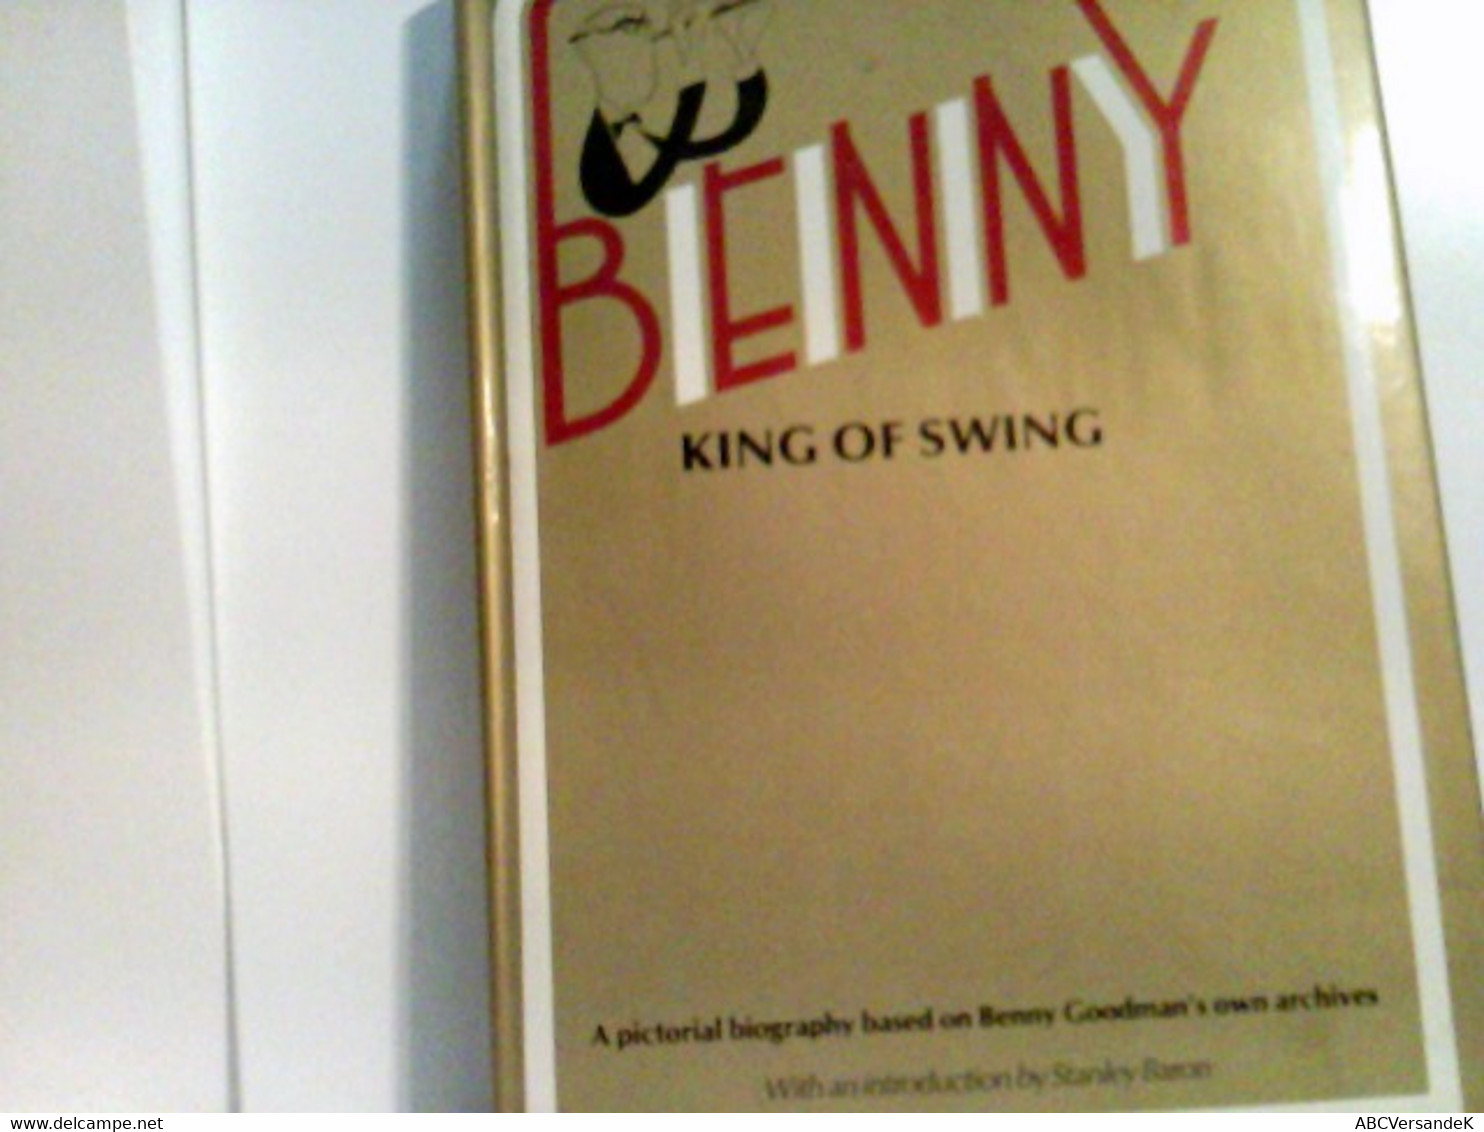 BENNY KING OF SWING. - Biographien & Memoiren